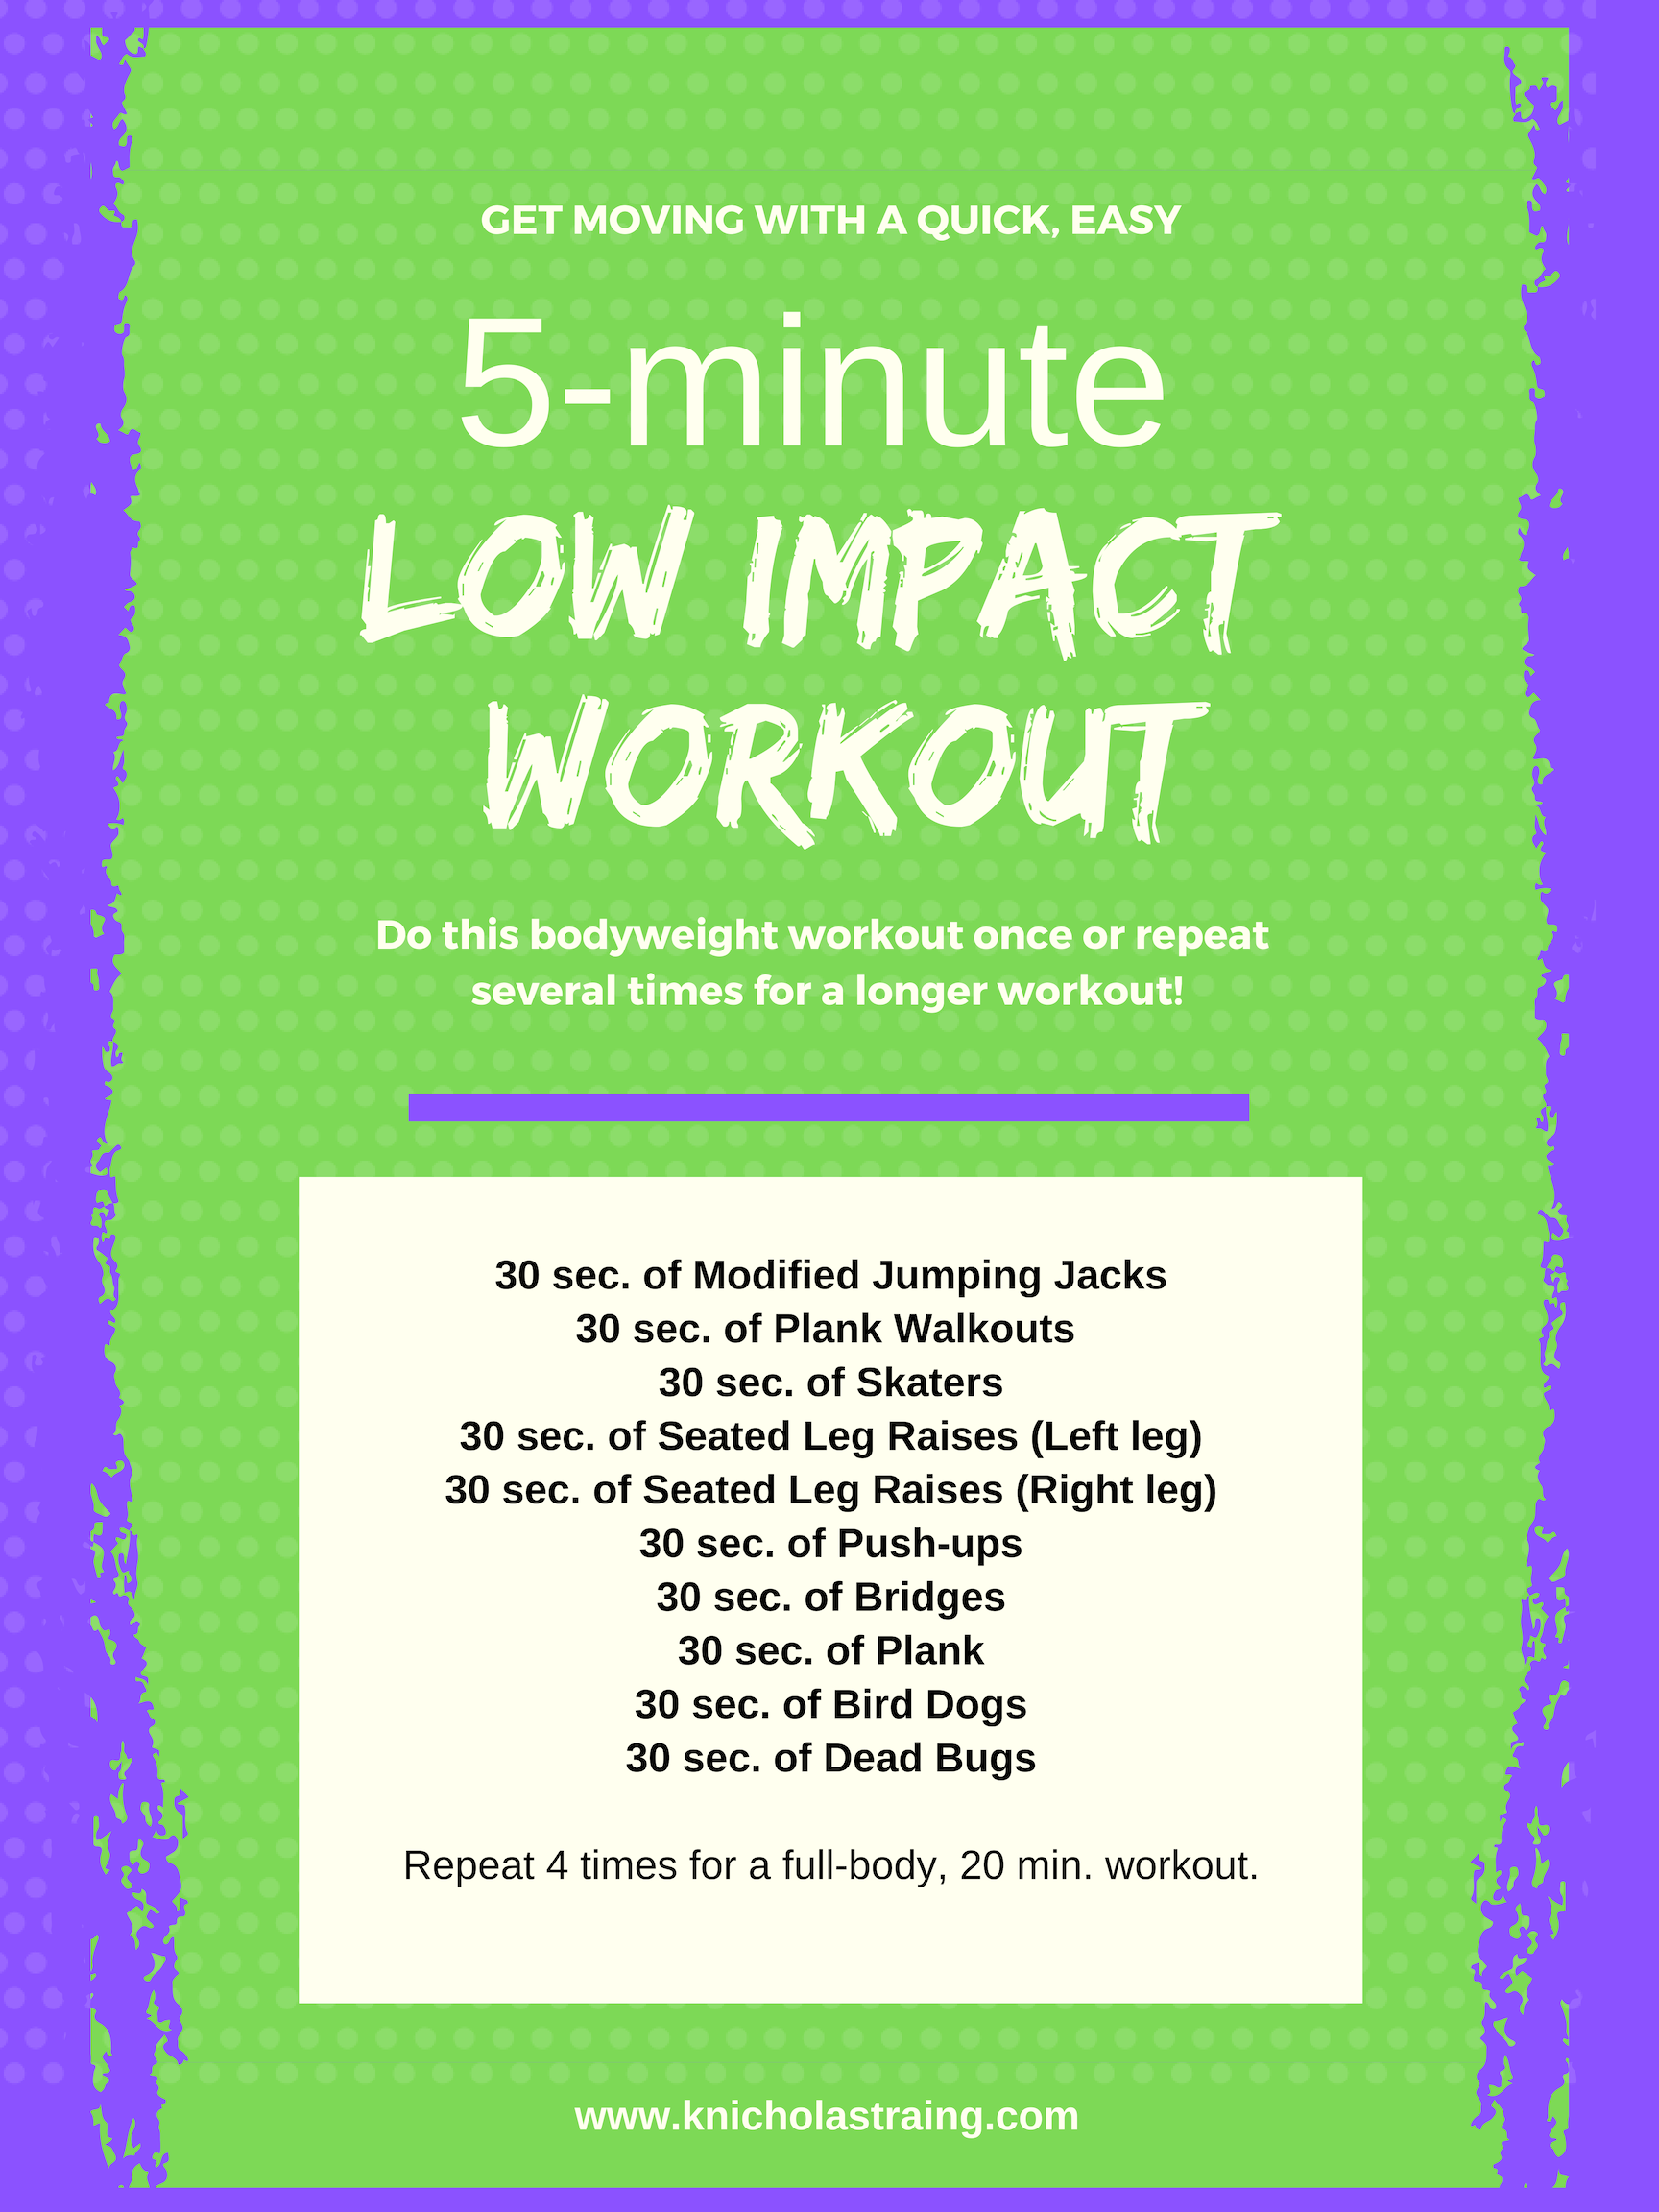 Low Impact 5 Min. Workout 